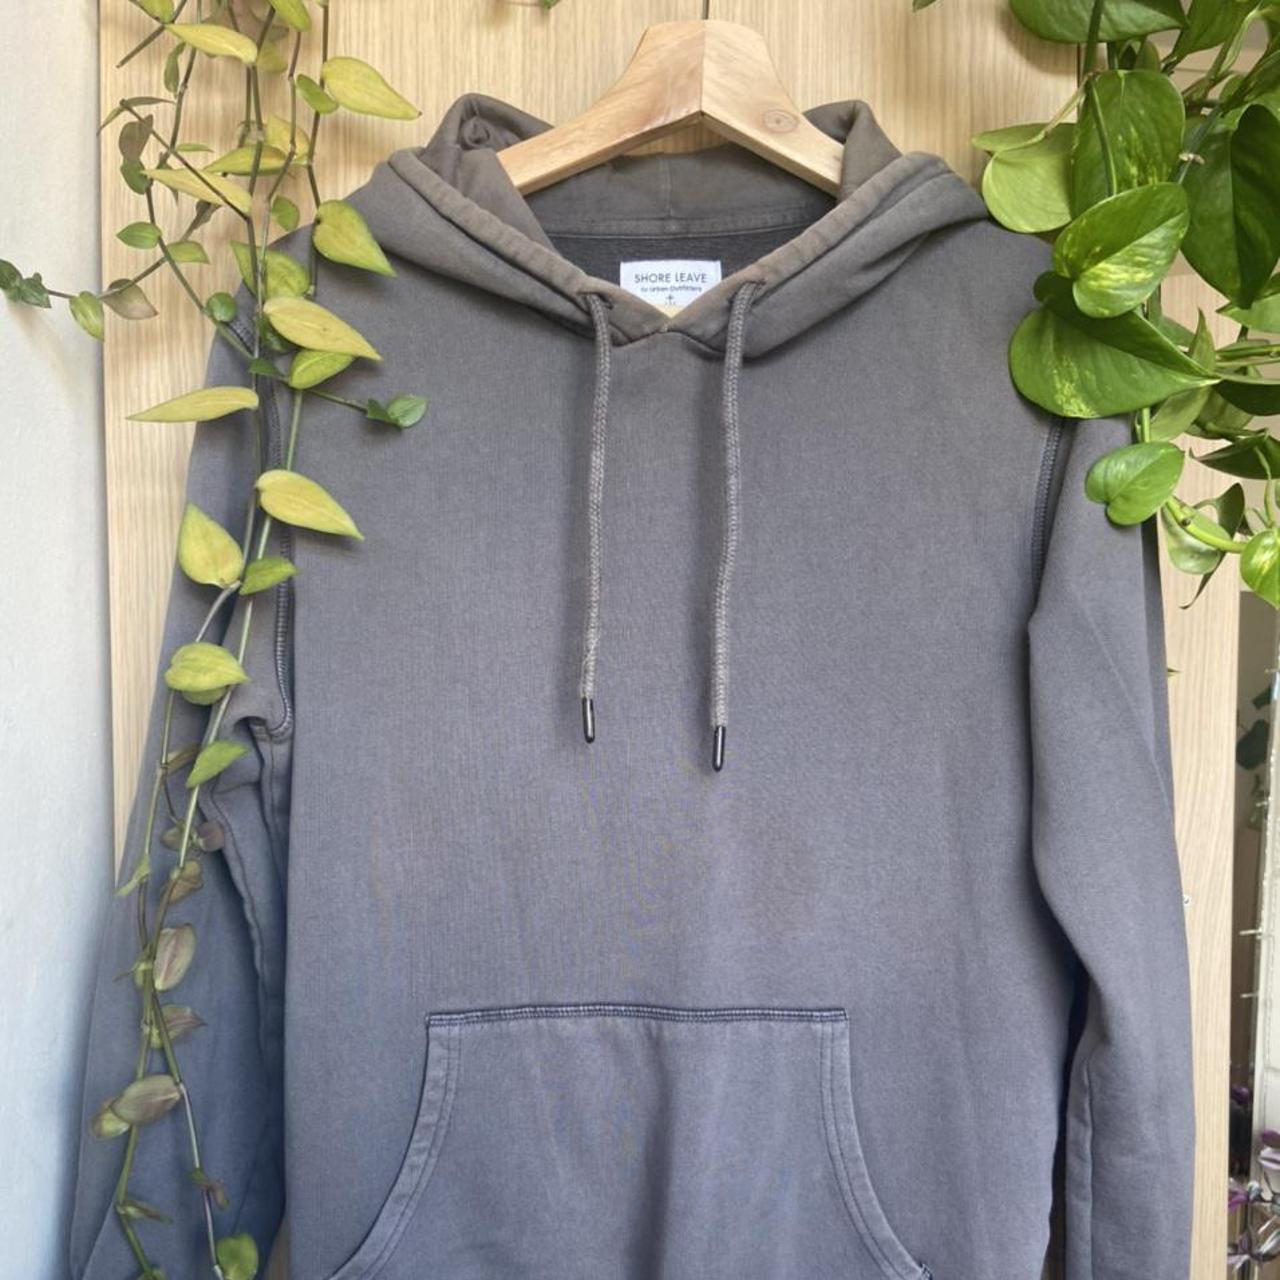 Shore leave - Urban outfitters think hoodie in dark... - Depop